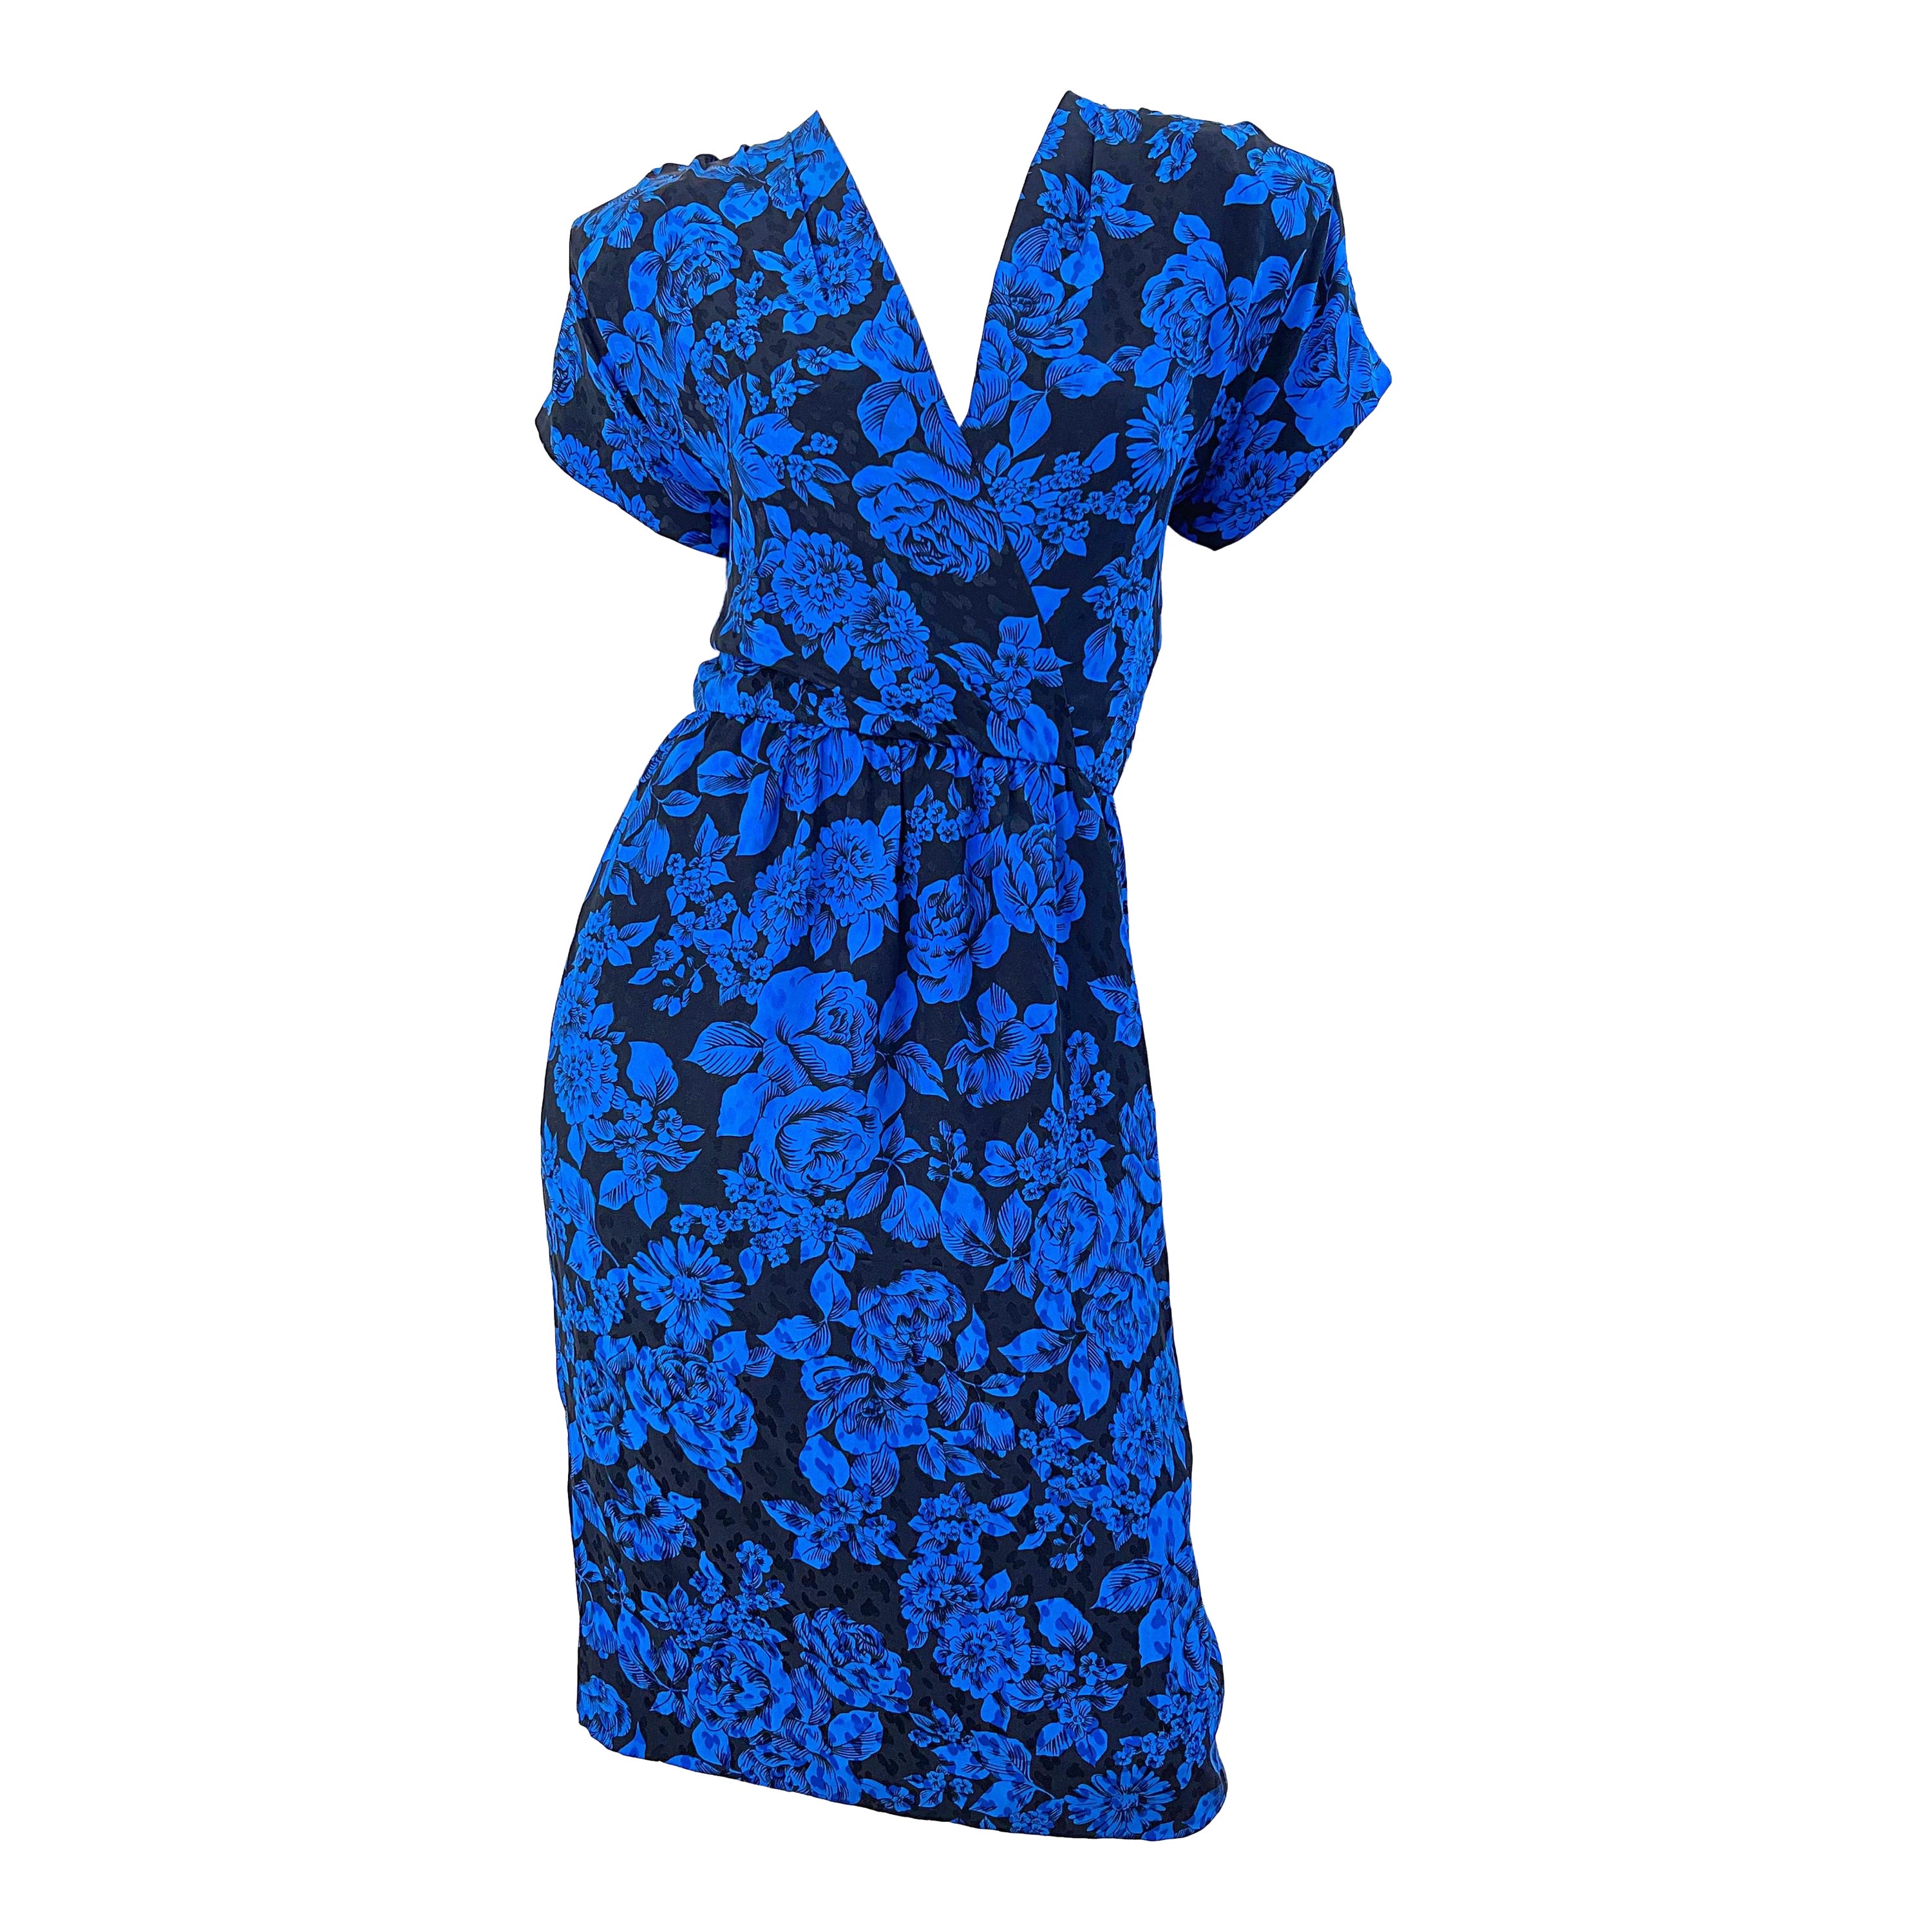 1980s Yves Saint Laurent Blue Black Floral Print Vintage 80s Silk Dress Size 42 